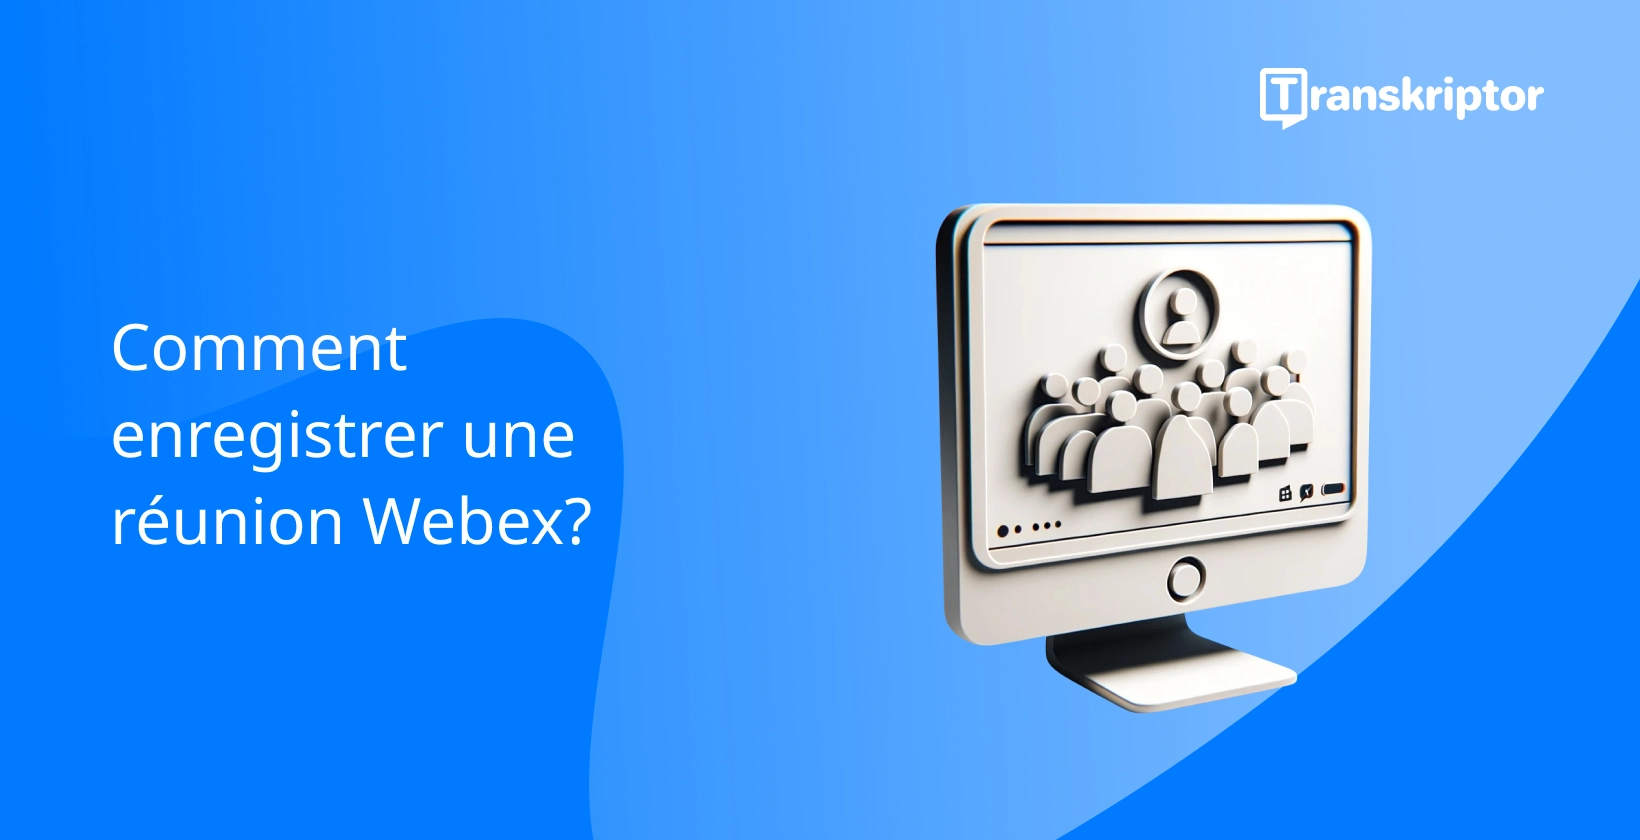 Enregistrement de réunions Webex avec un bouton de lecture et une interface de réunion.